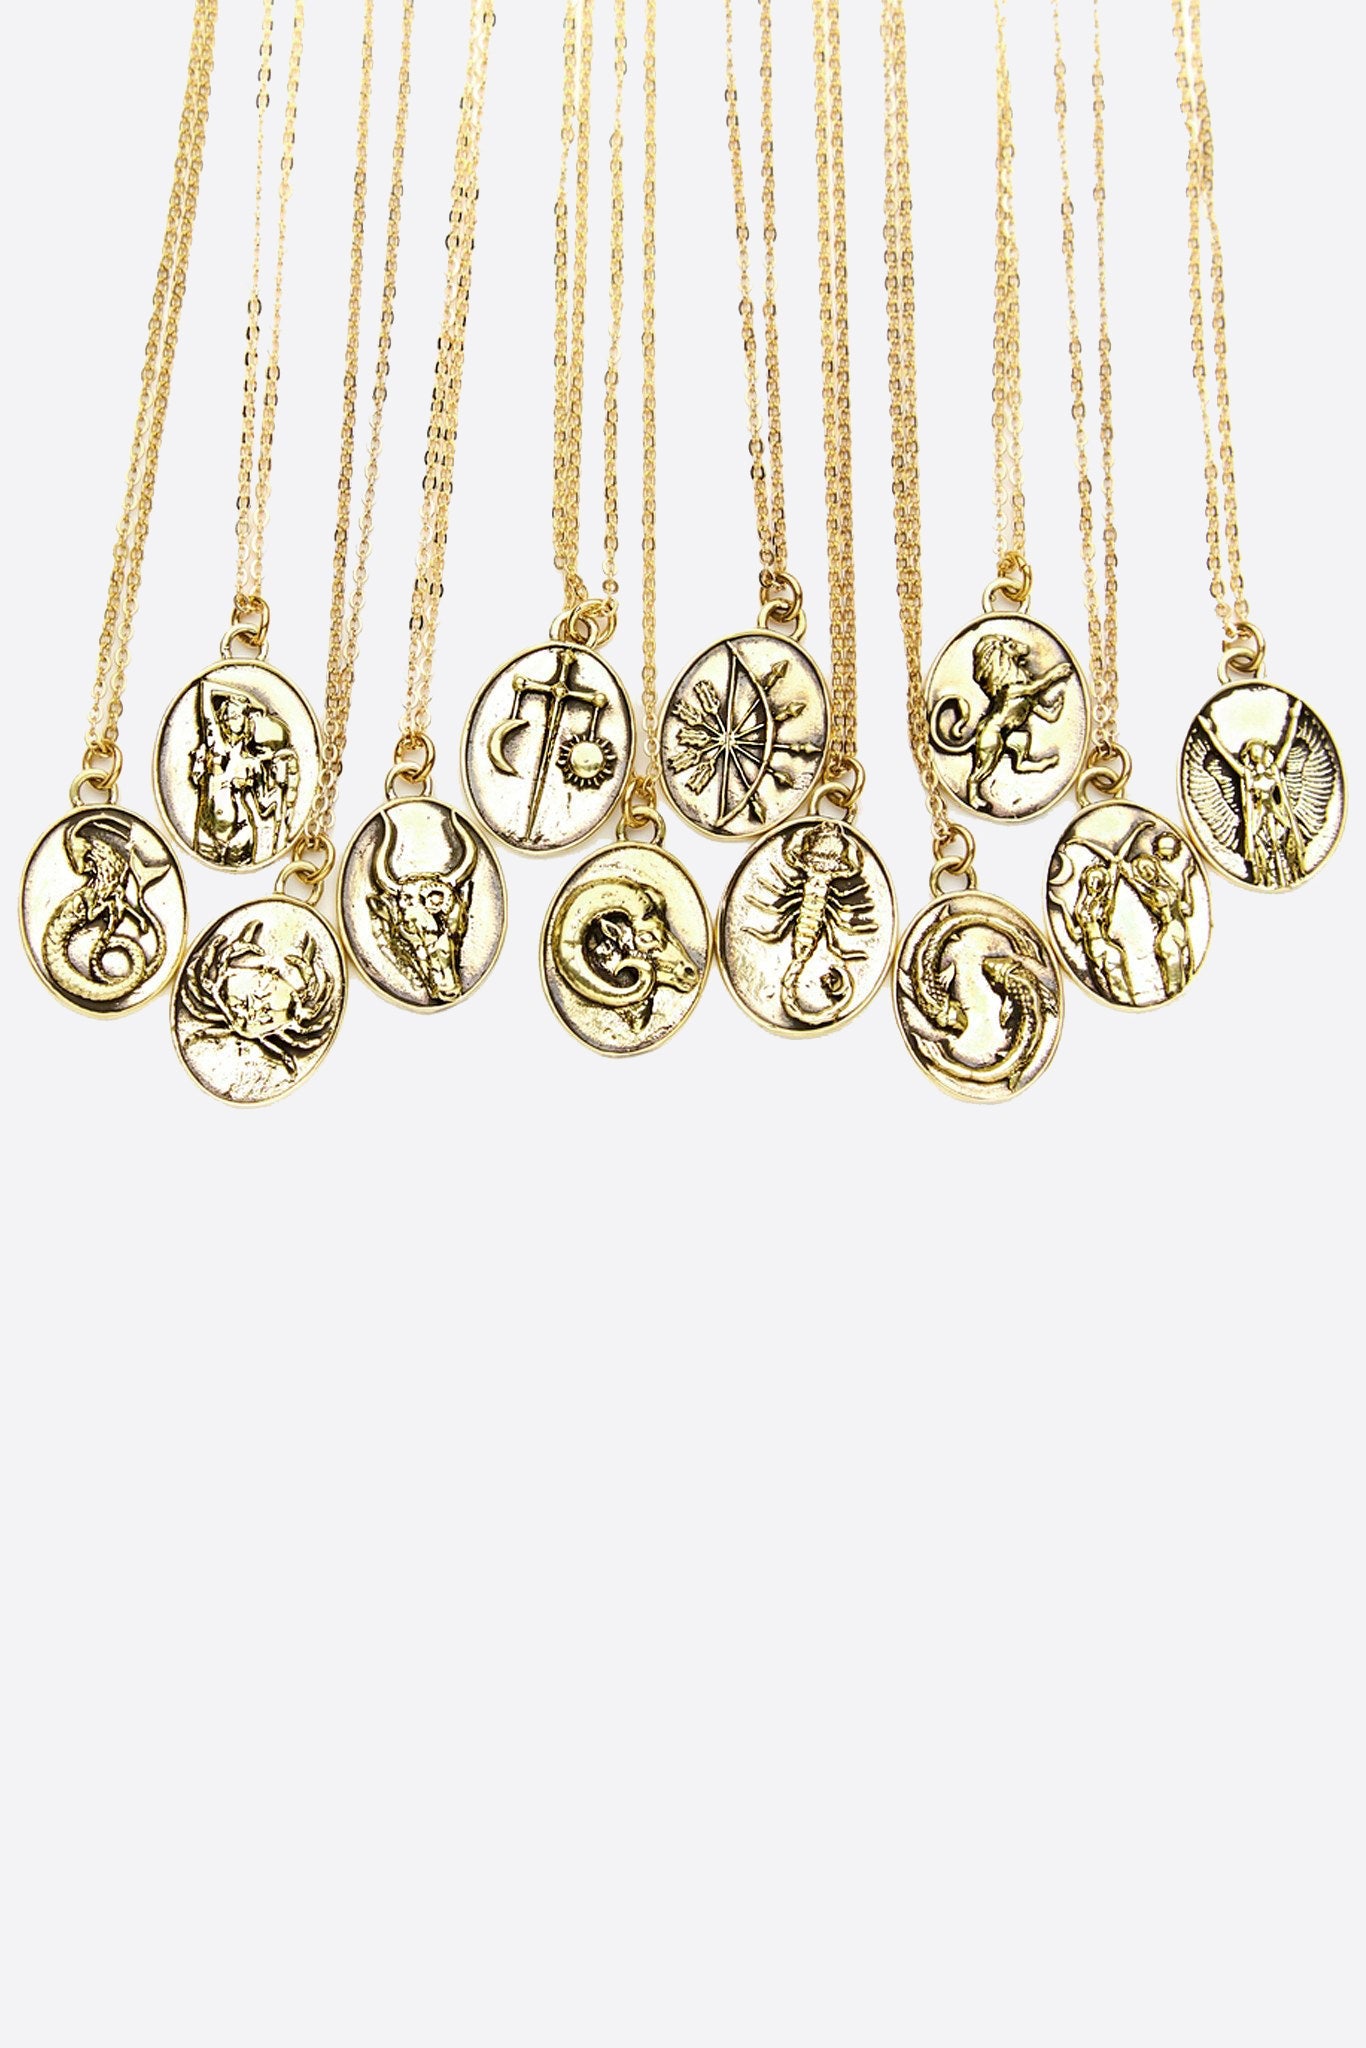 Gold Aquarius Necklace